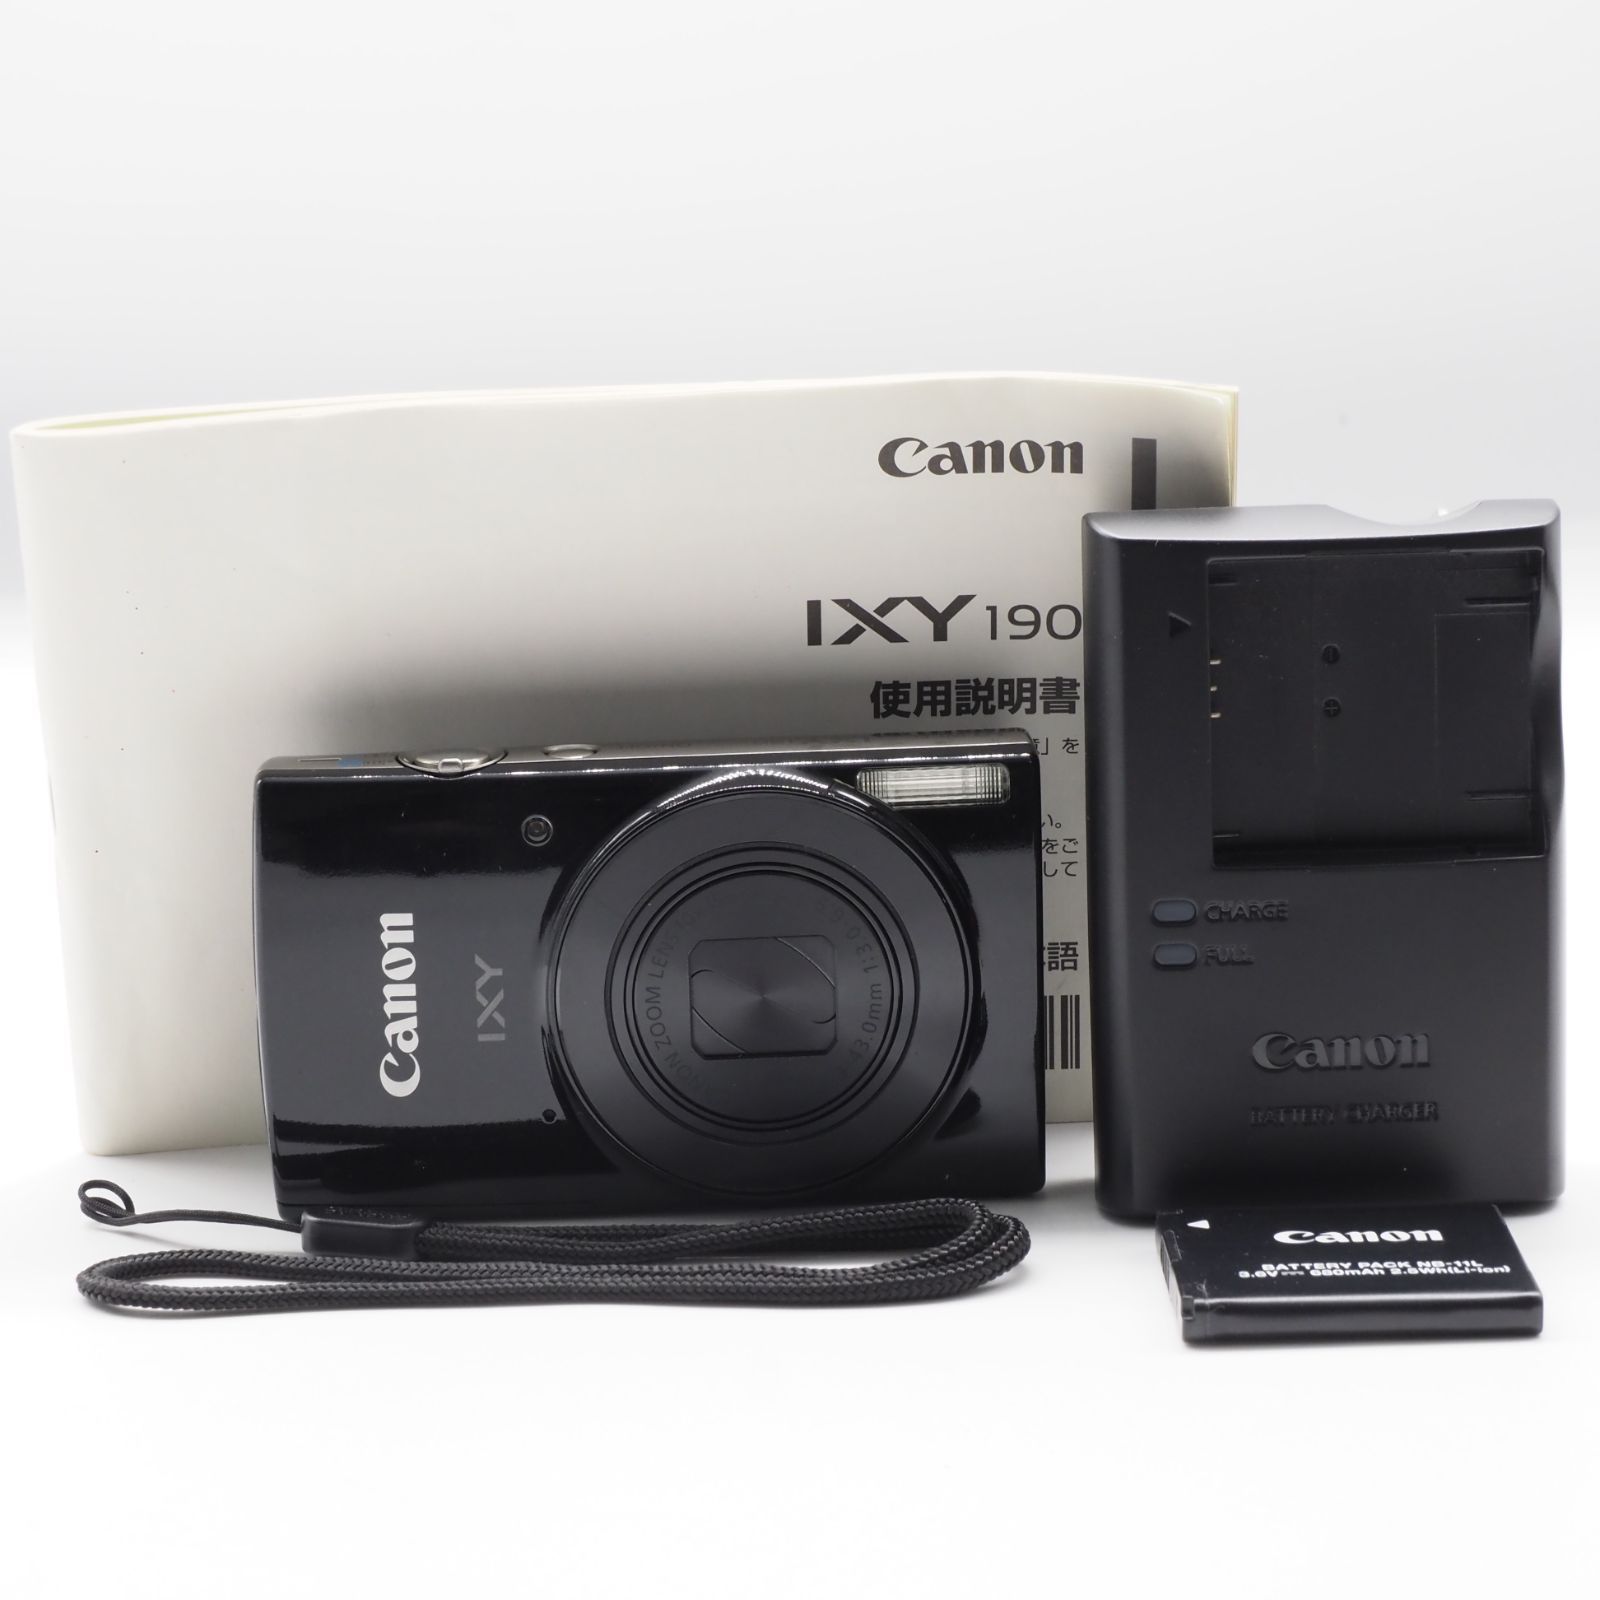 純正激安Canon IXY 190 デジタル カメラ WIFI内蔵 cm54 デジタルカメラ